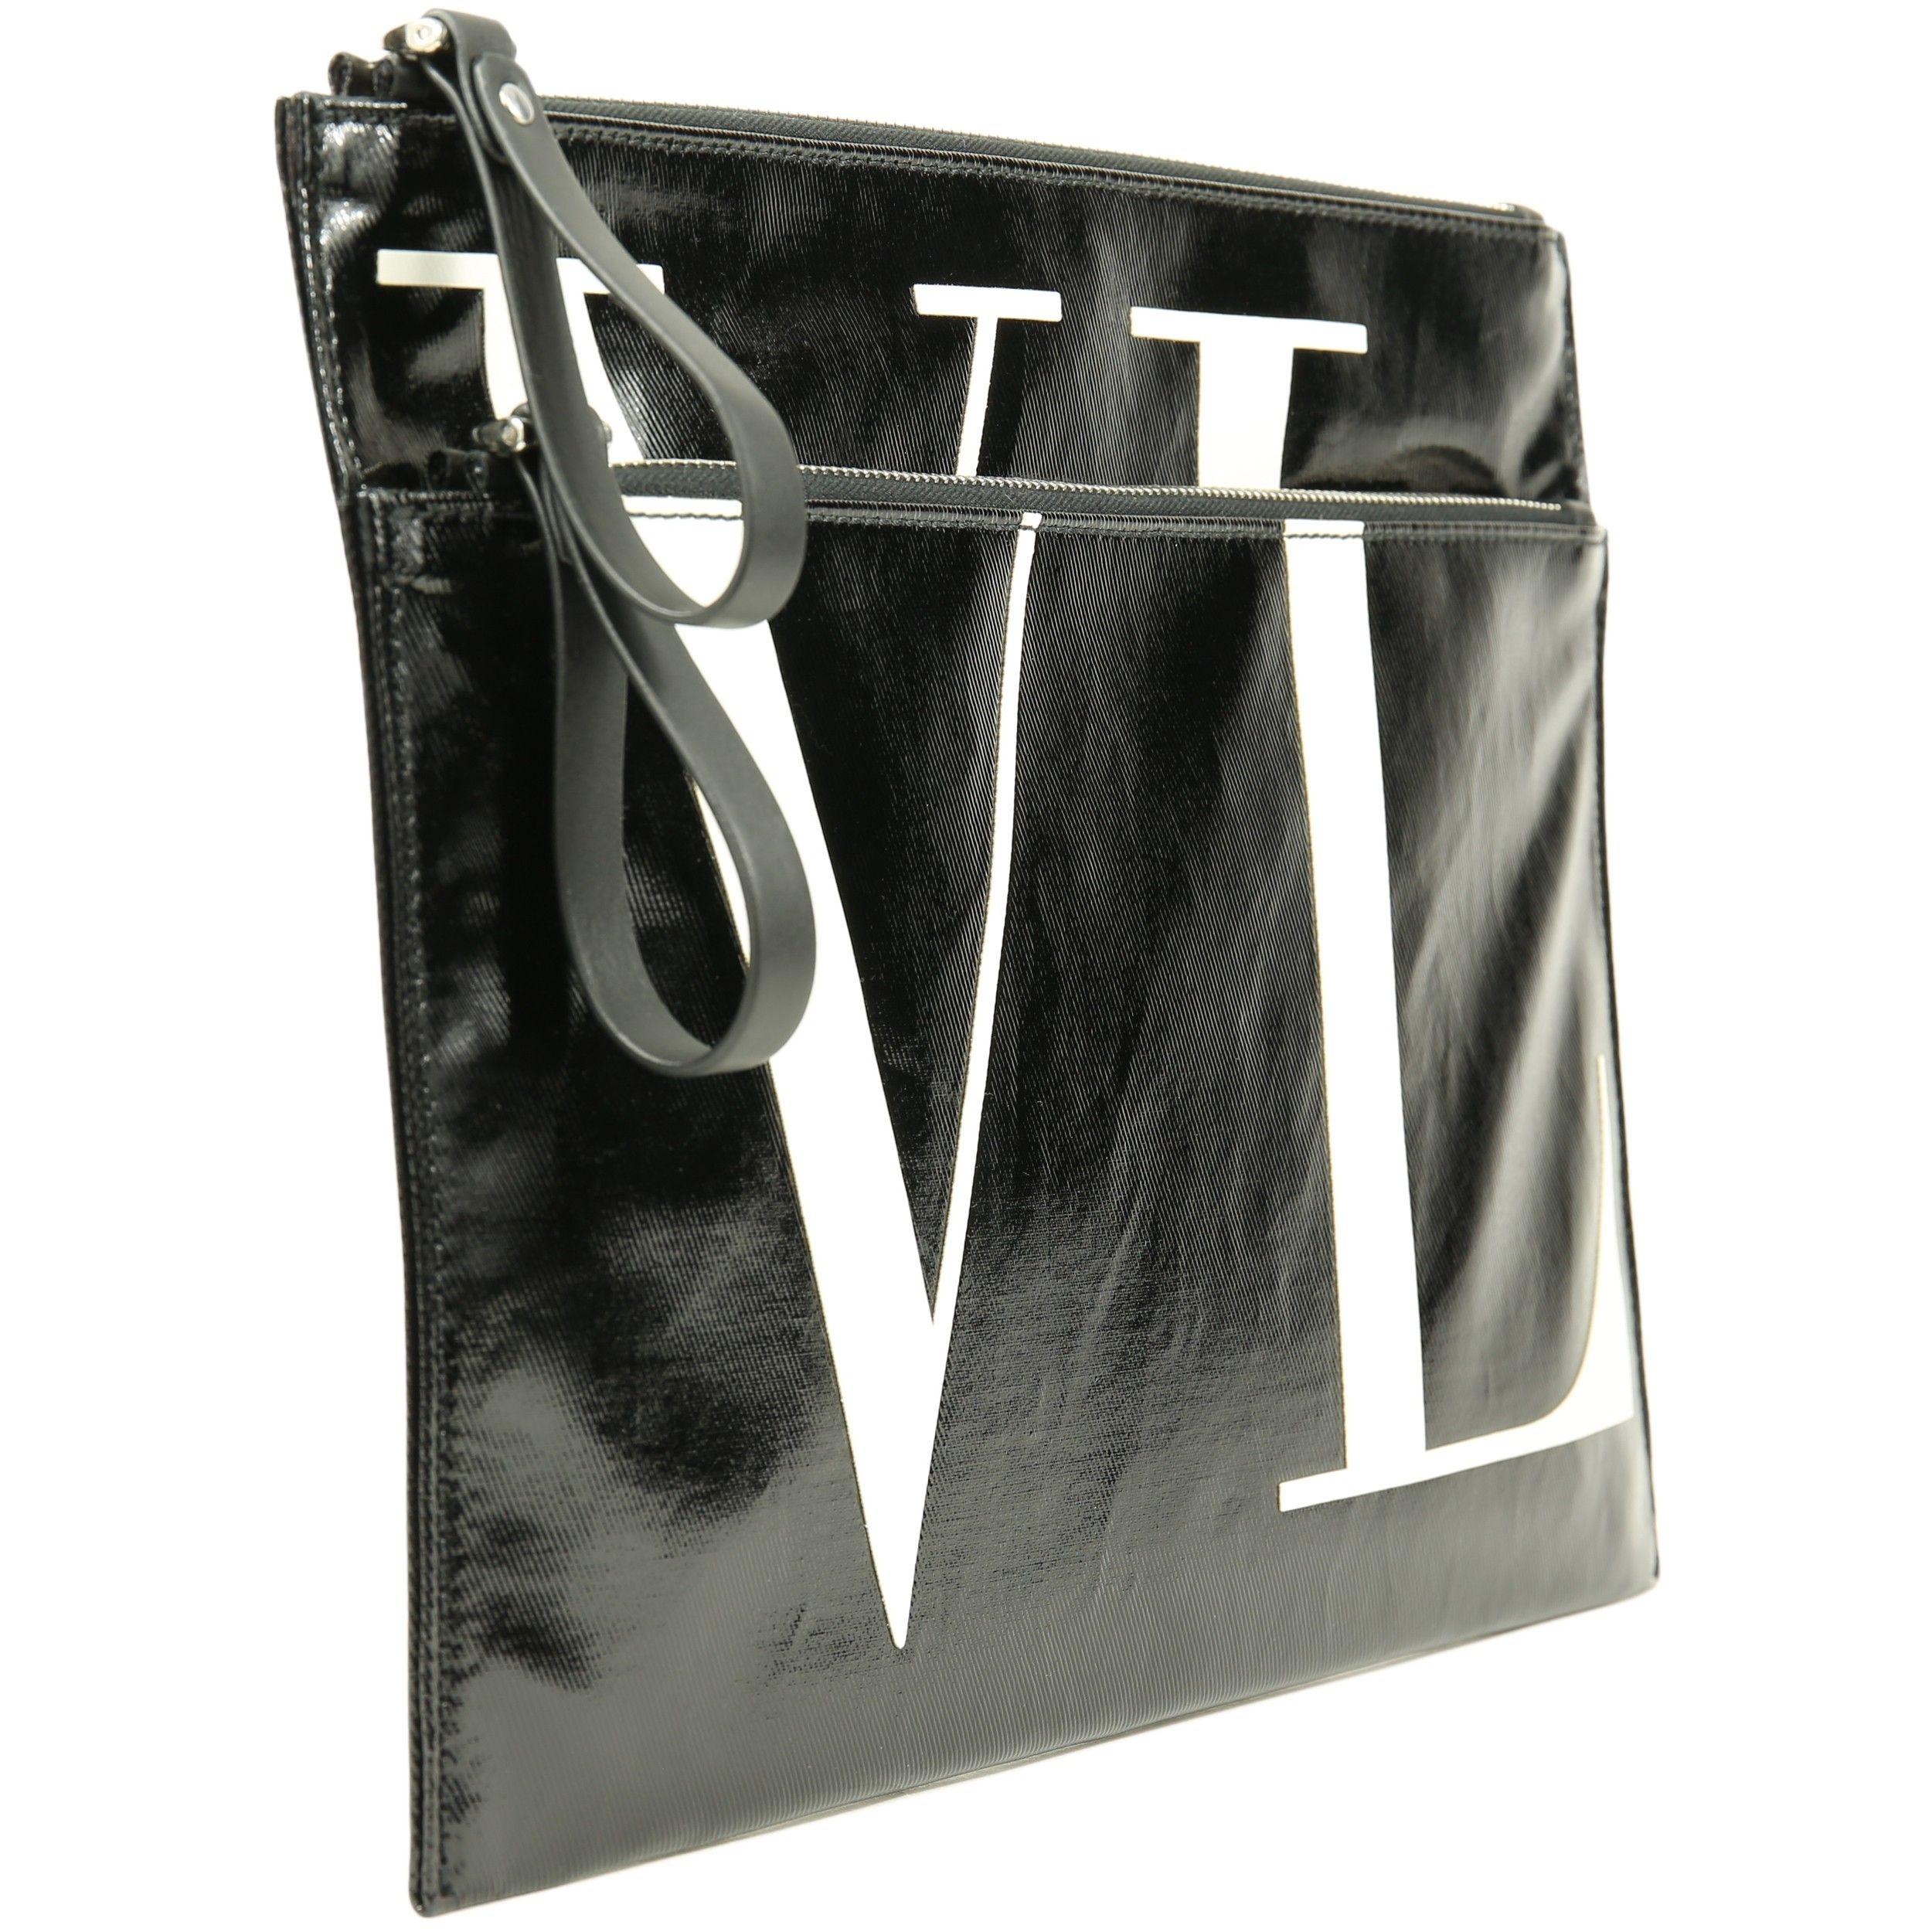 Valentino Garavani Logo - Valentino Garavani 'VLTN' Logo Clutch Bag